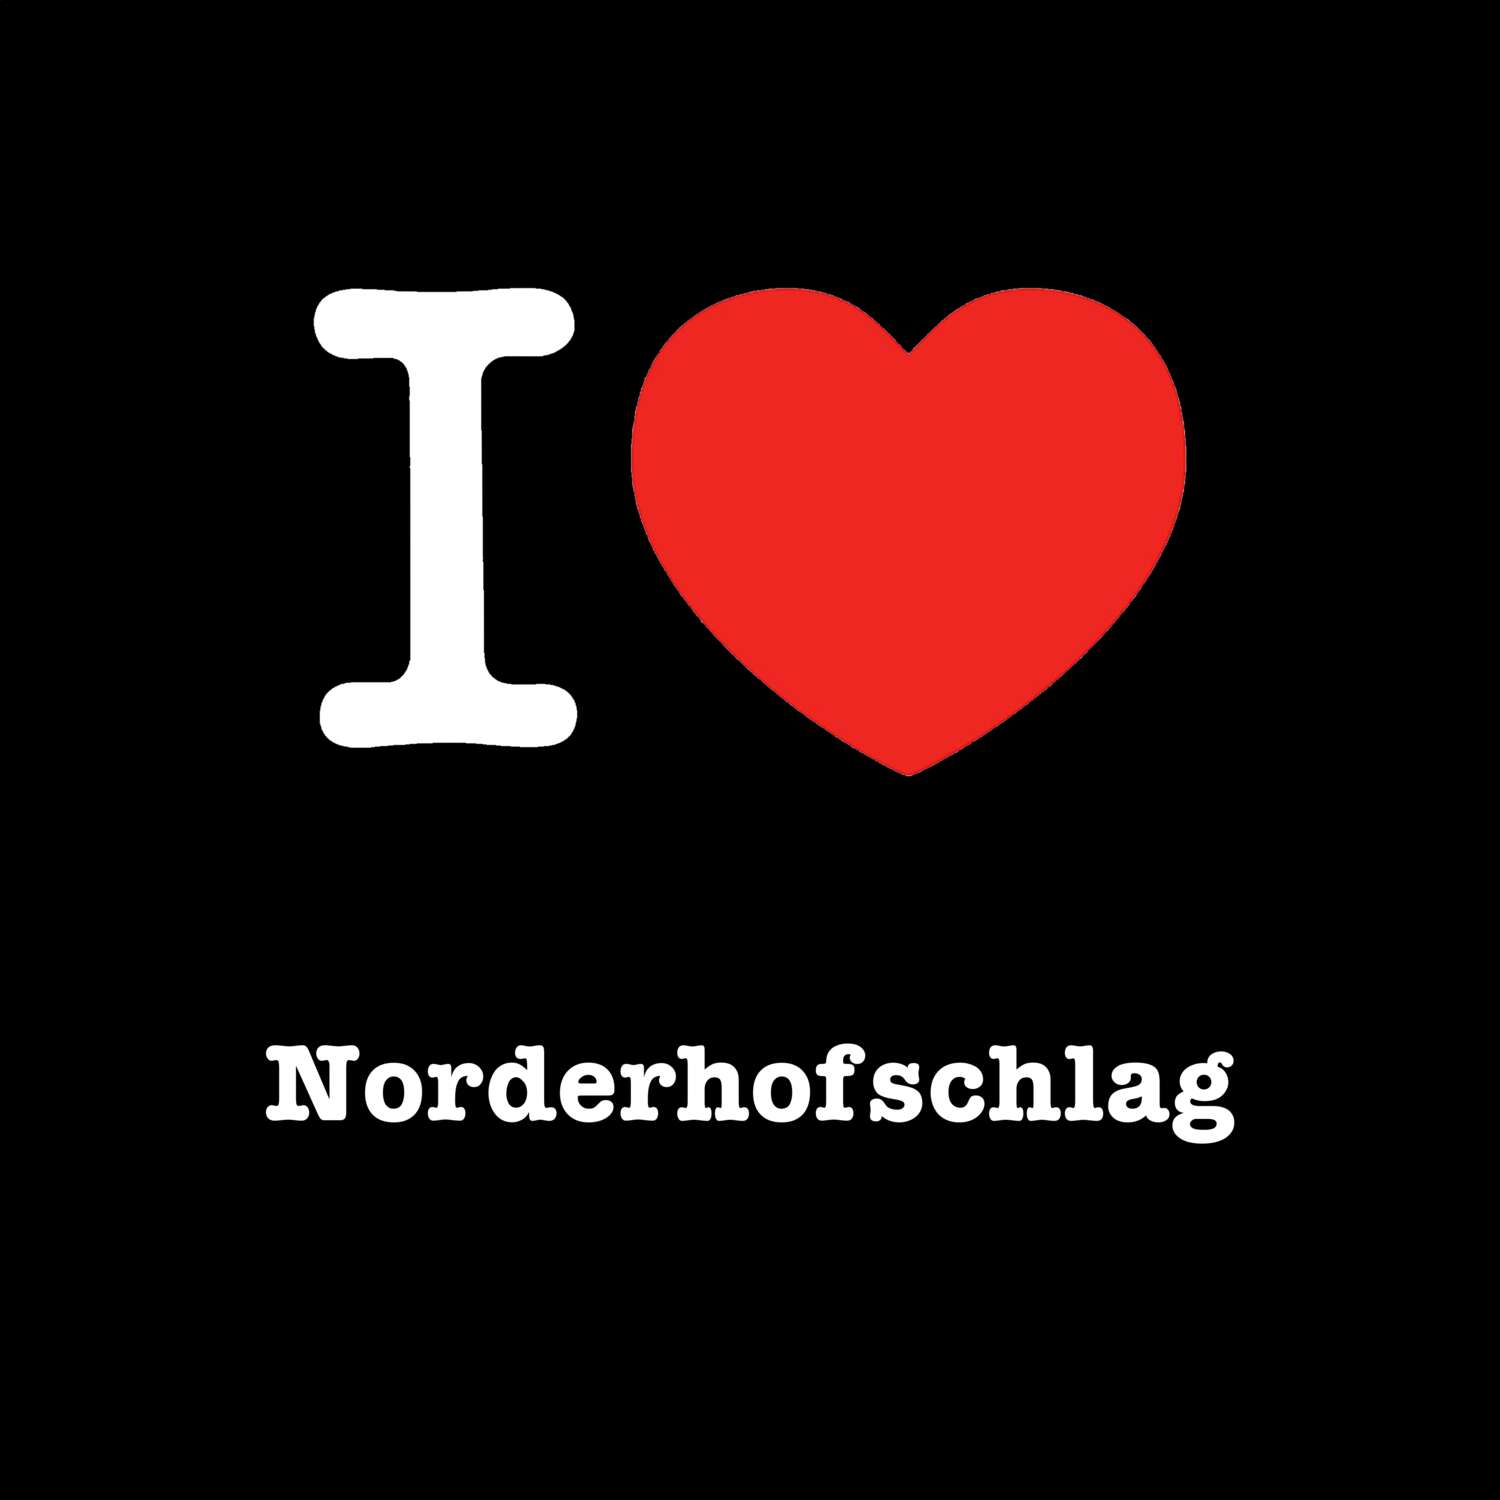 Norderhofschlag T-Shirt »I love«